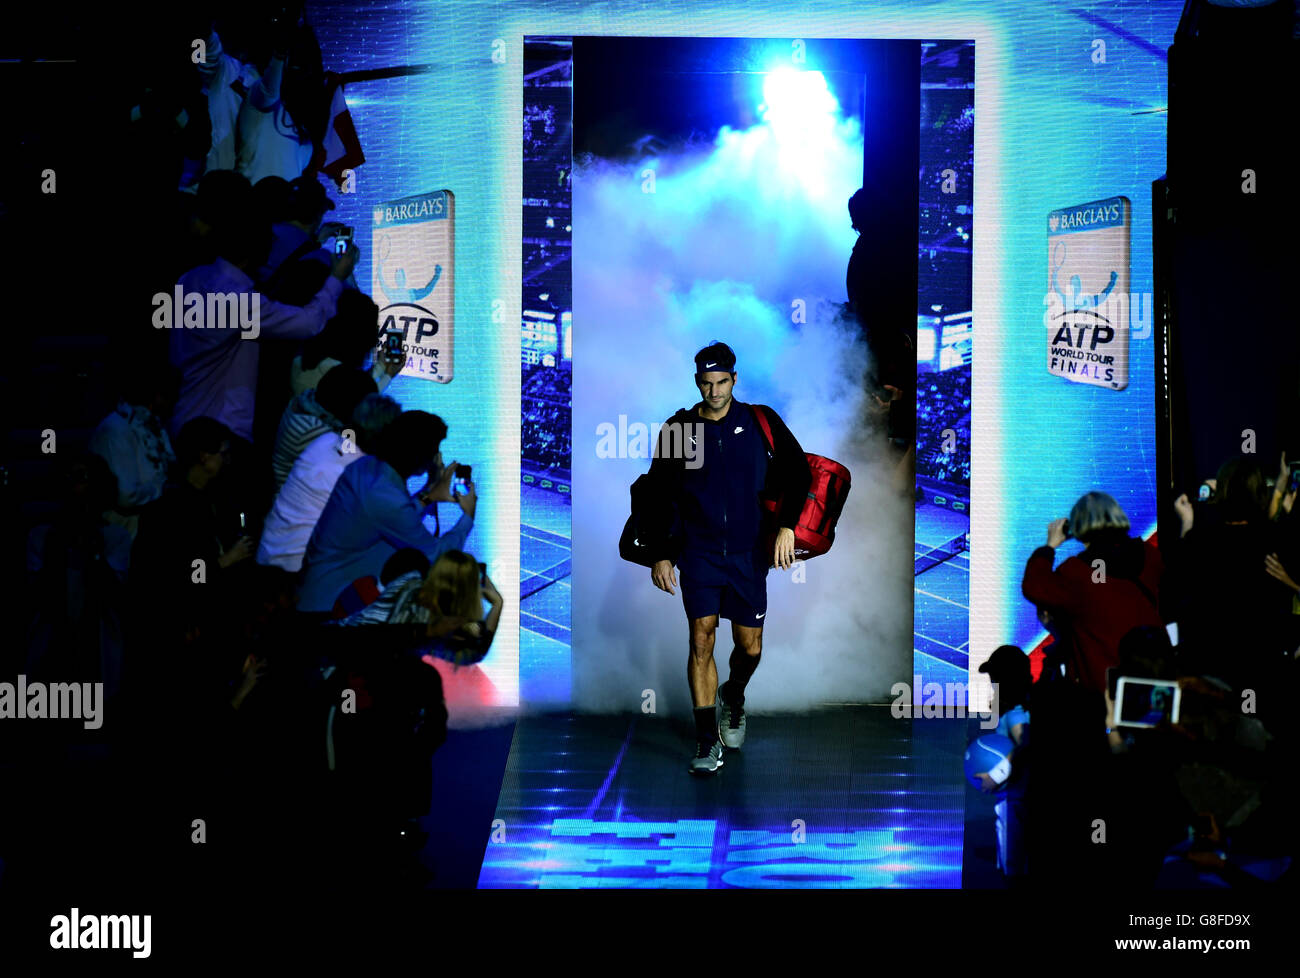 Roger Federer, de Suisse, se promène sur le terrain pendant la première journée des finales du World Tour ATP à l'O2 Arena de Londres. APPUYEZ SUR ASSSOCIATION photo. Date de la photo: Dimanche 15 novembre 2015. Voir PA Story TENNIS Londres. Le crédit photo devrait se lire comme suit : Adam Davy/PA Wire Banque D'Images